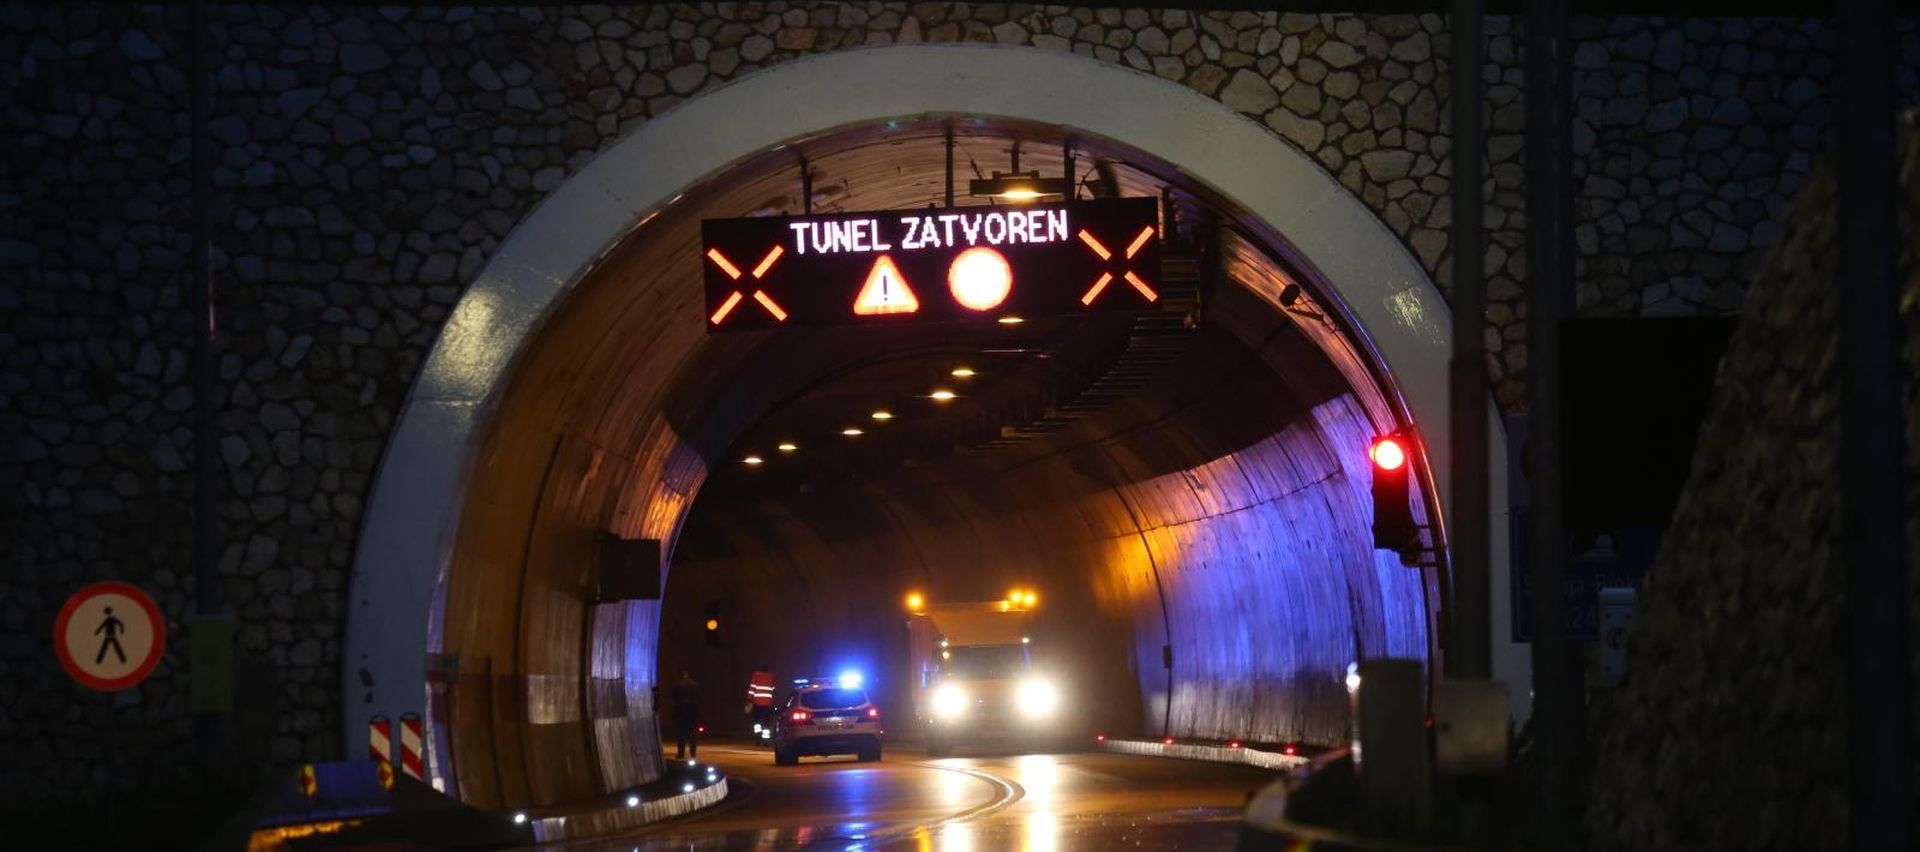 Zagvozd: Zbog prometne nesreće zatvoren tunel sv. Ilija 01.11.2018., Zagvozd - Zbog prometne nesrece zatvoren tunel sv. Ilijja. 
Photo:Ivo Cagalj/PIXSELL